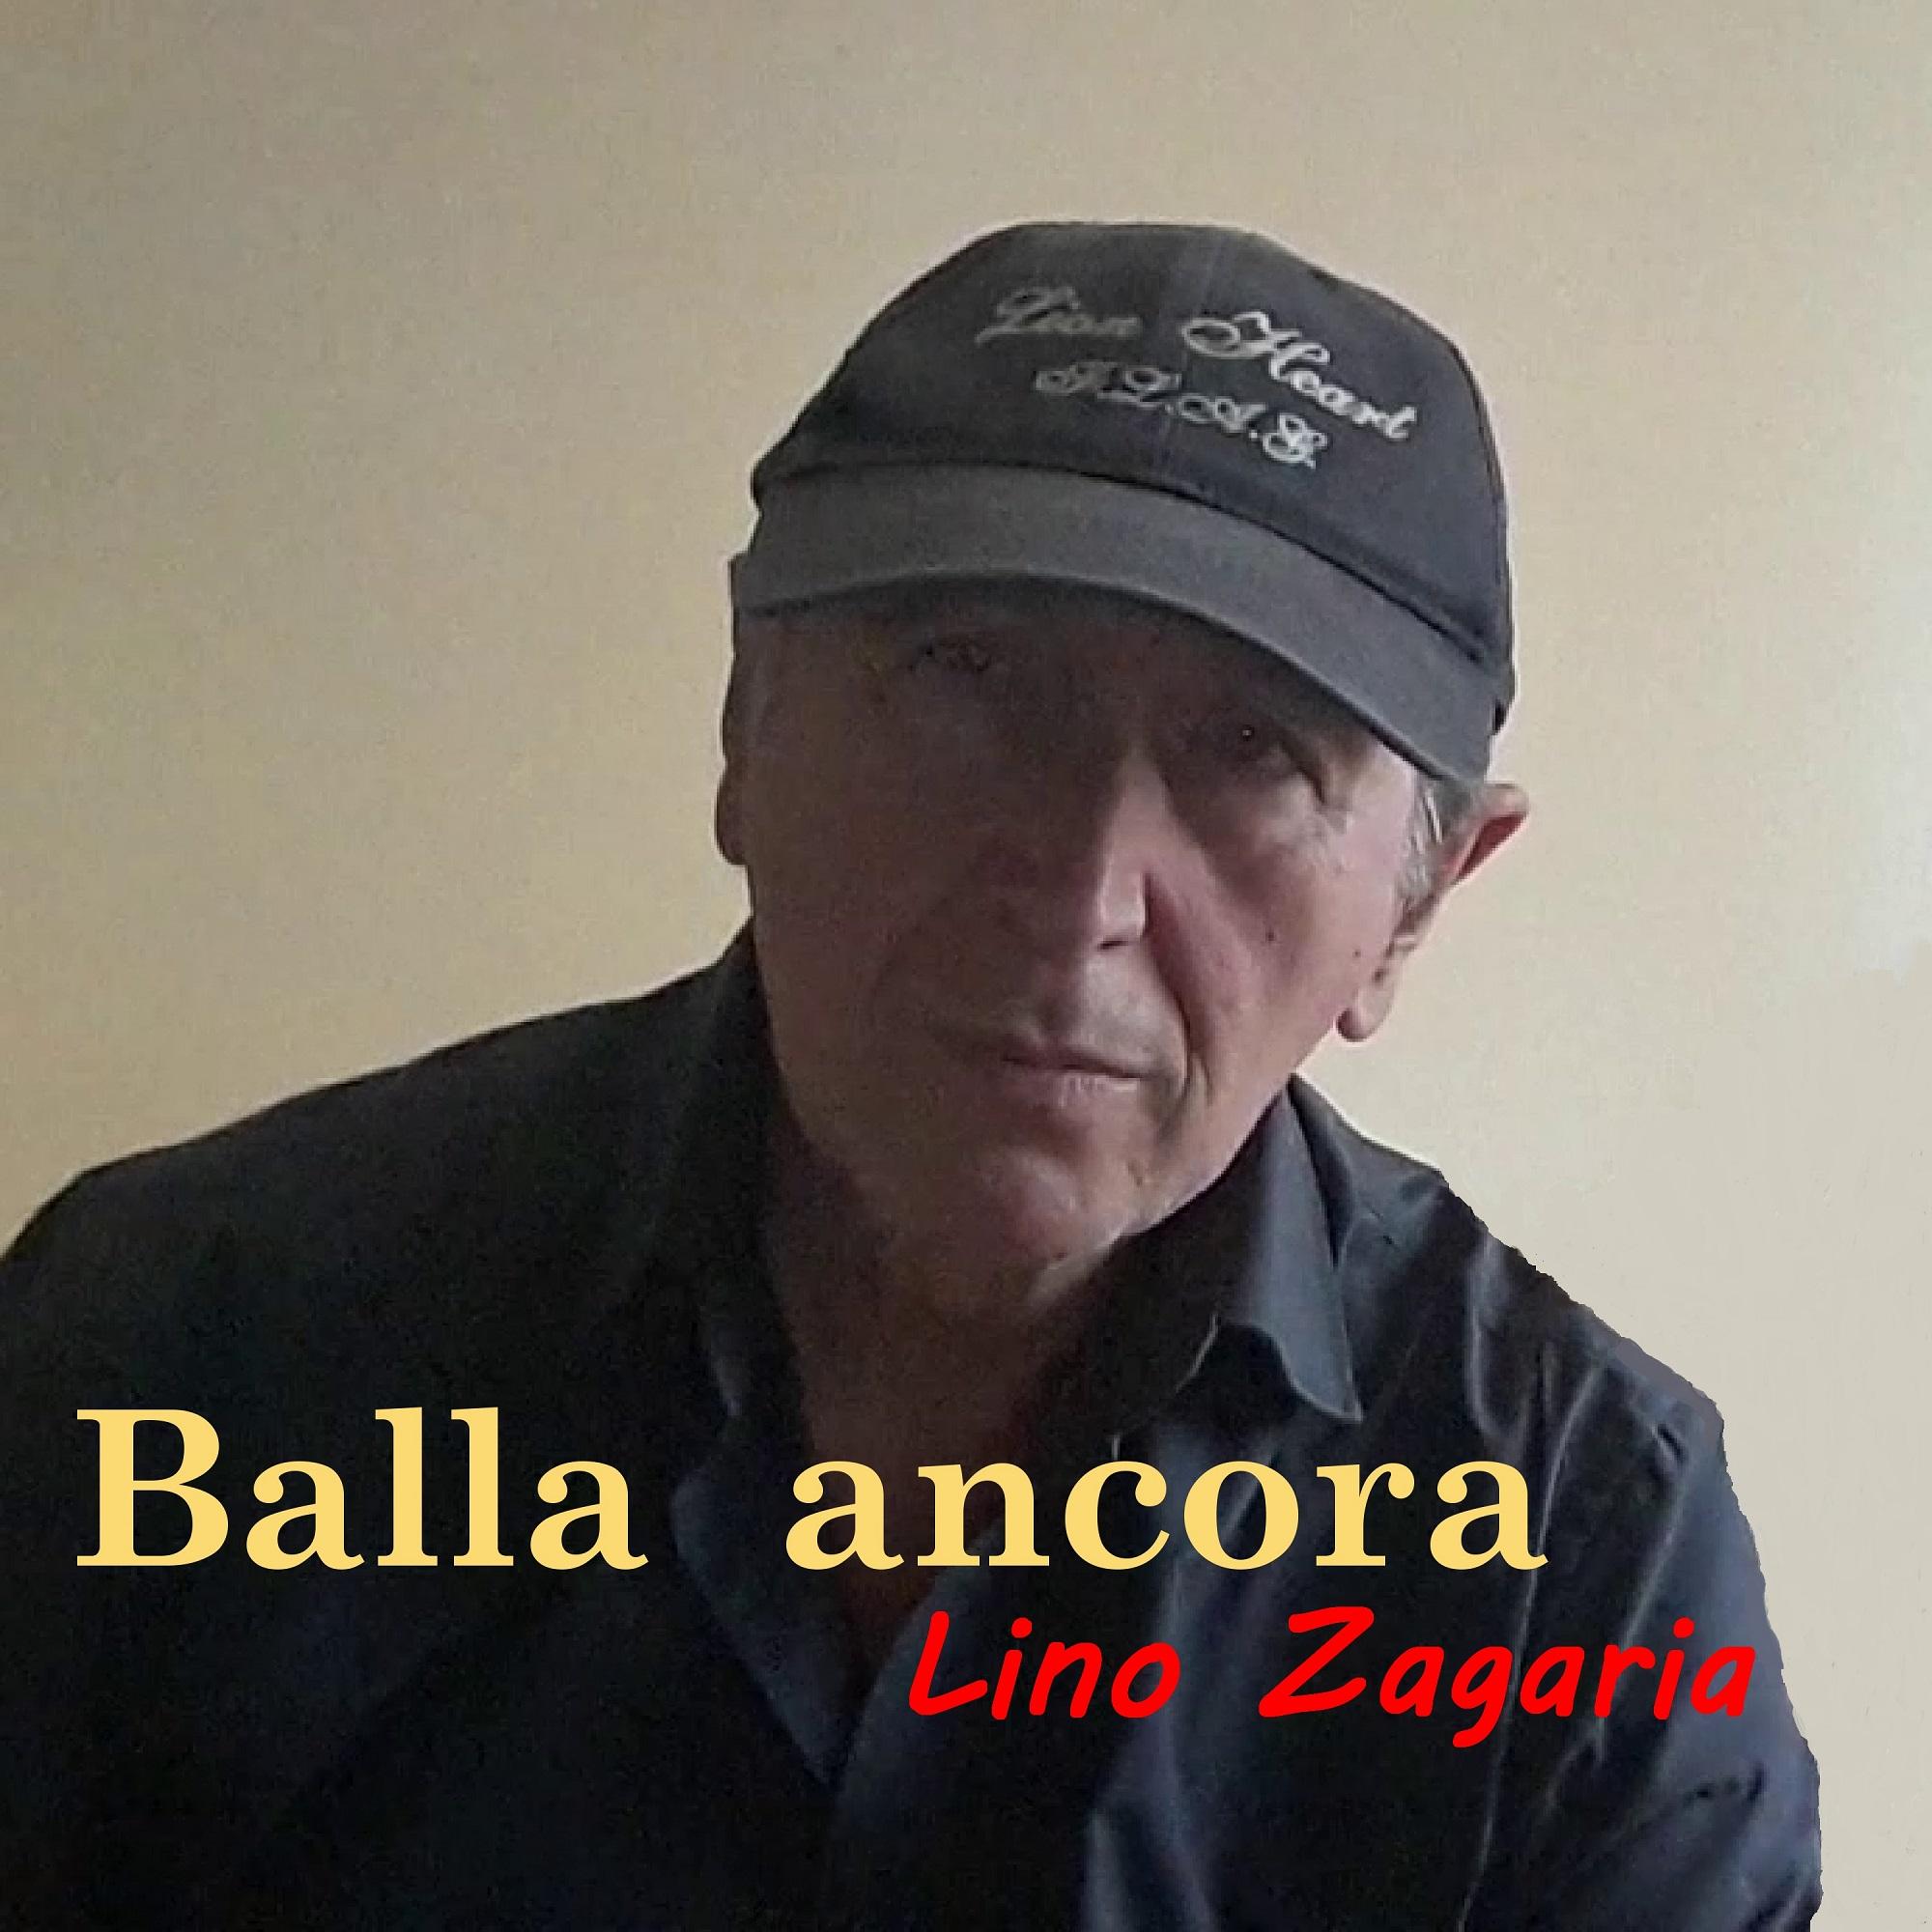 Balla ancora - Lino Zagaria